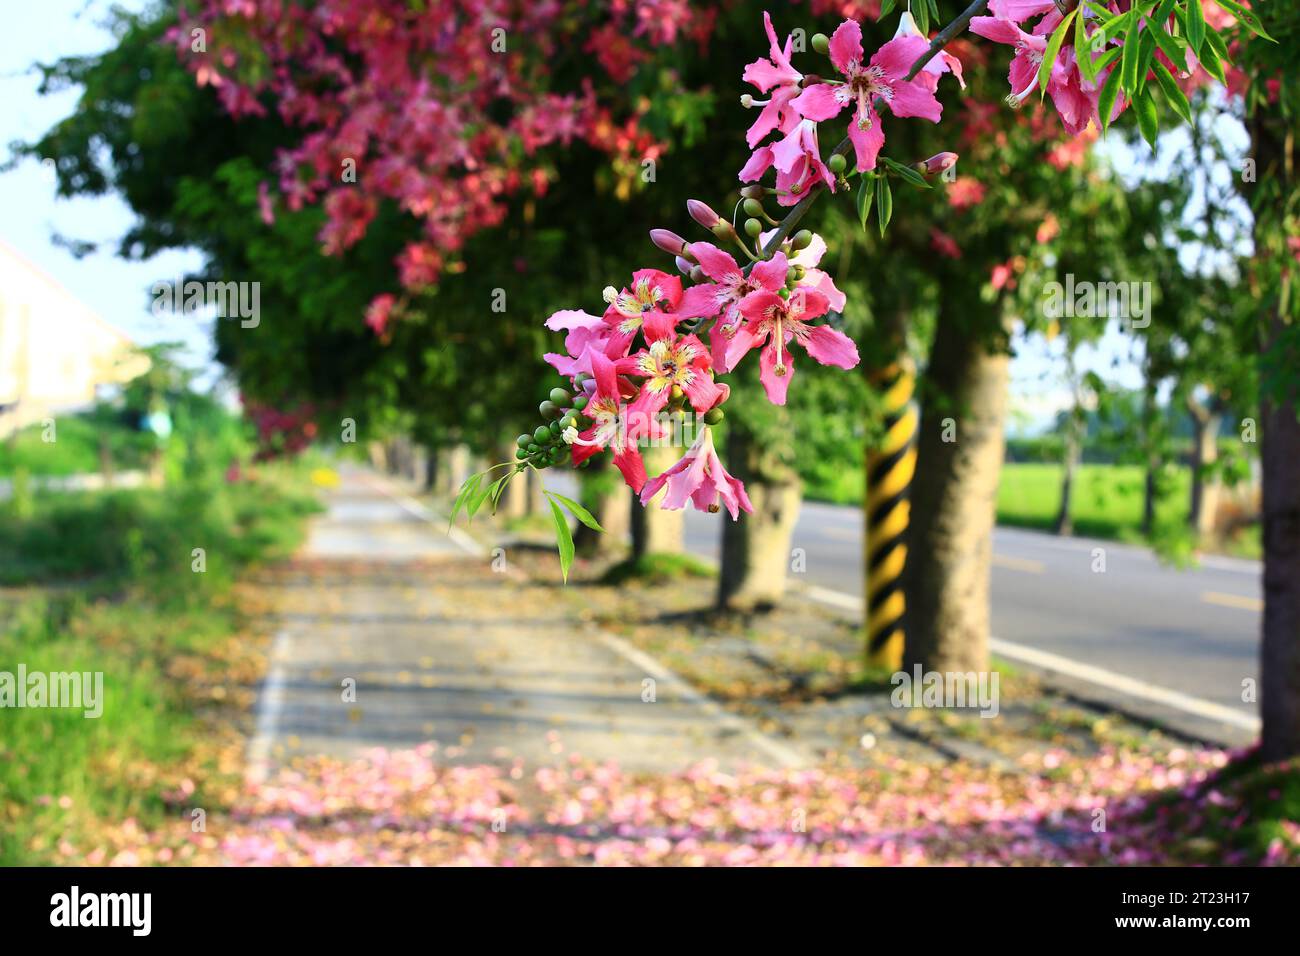 Splendido scenario con fiori fioriti di alberi di seta o di filo di seta e strada, rosa con fiori gialli che fioriscono sui rami Foto Stock